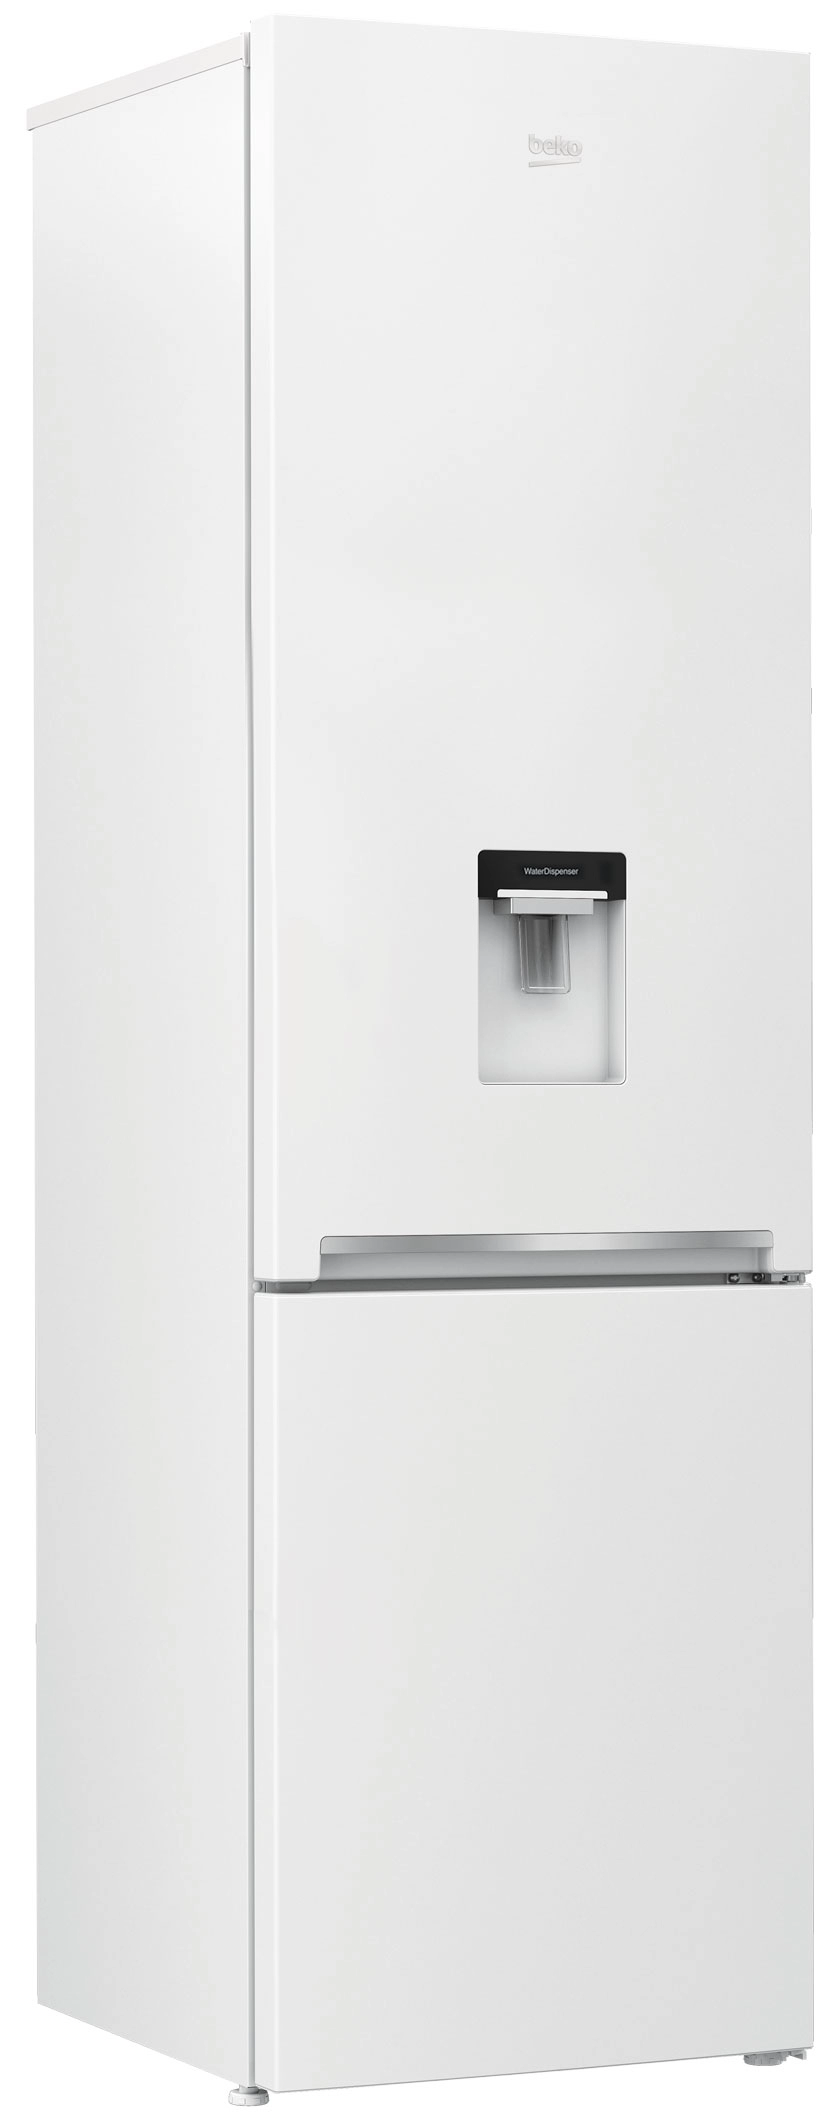 Холодильник с нижней морозильной камерой Beko RCSA406K40DWN, 386 л, 202.5 см, E, Белый